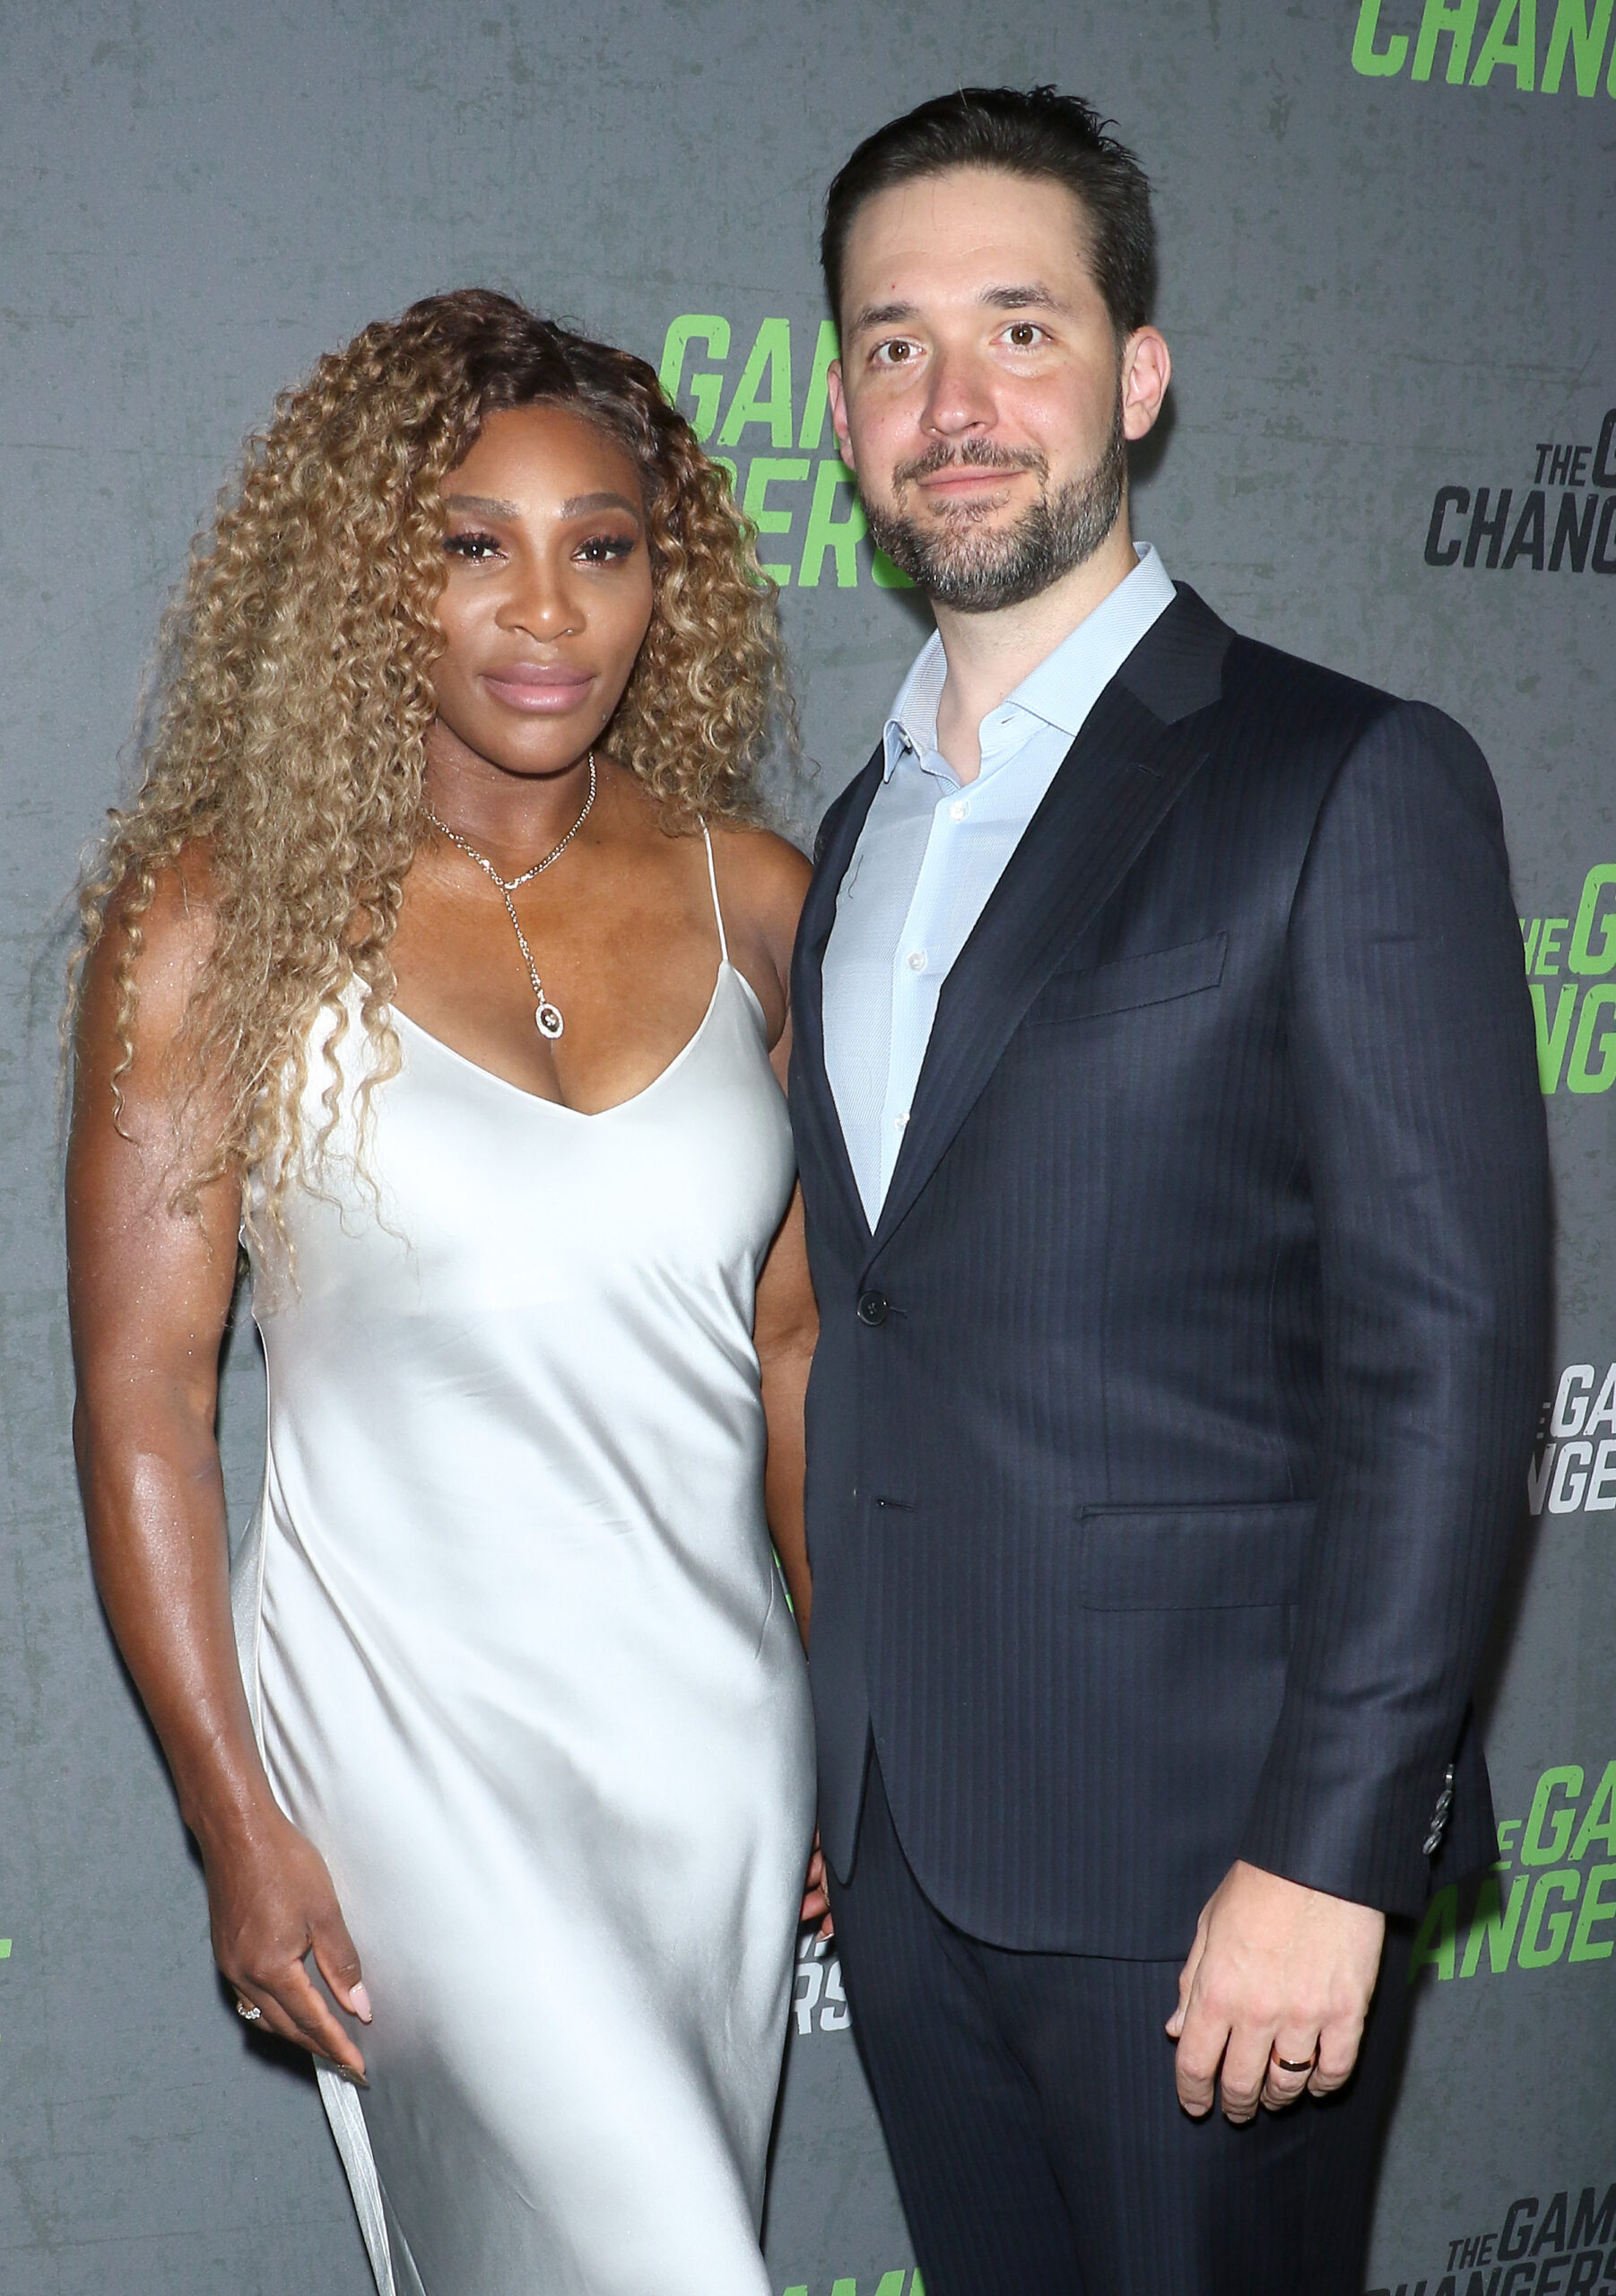 Serena Williams alături de soțul ei, Alexis Ohanian la un eveniment monden